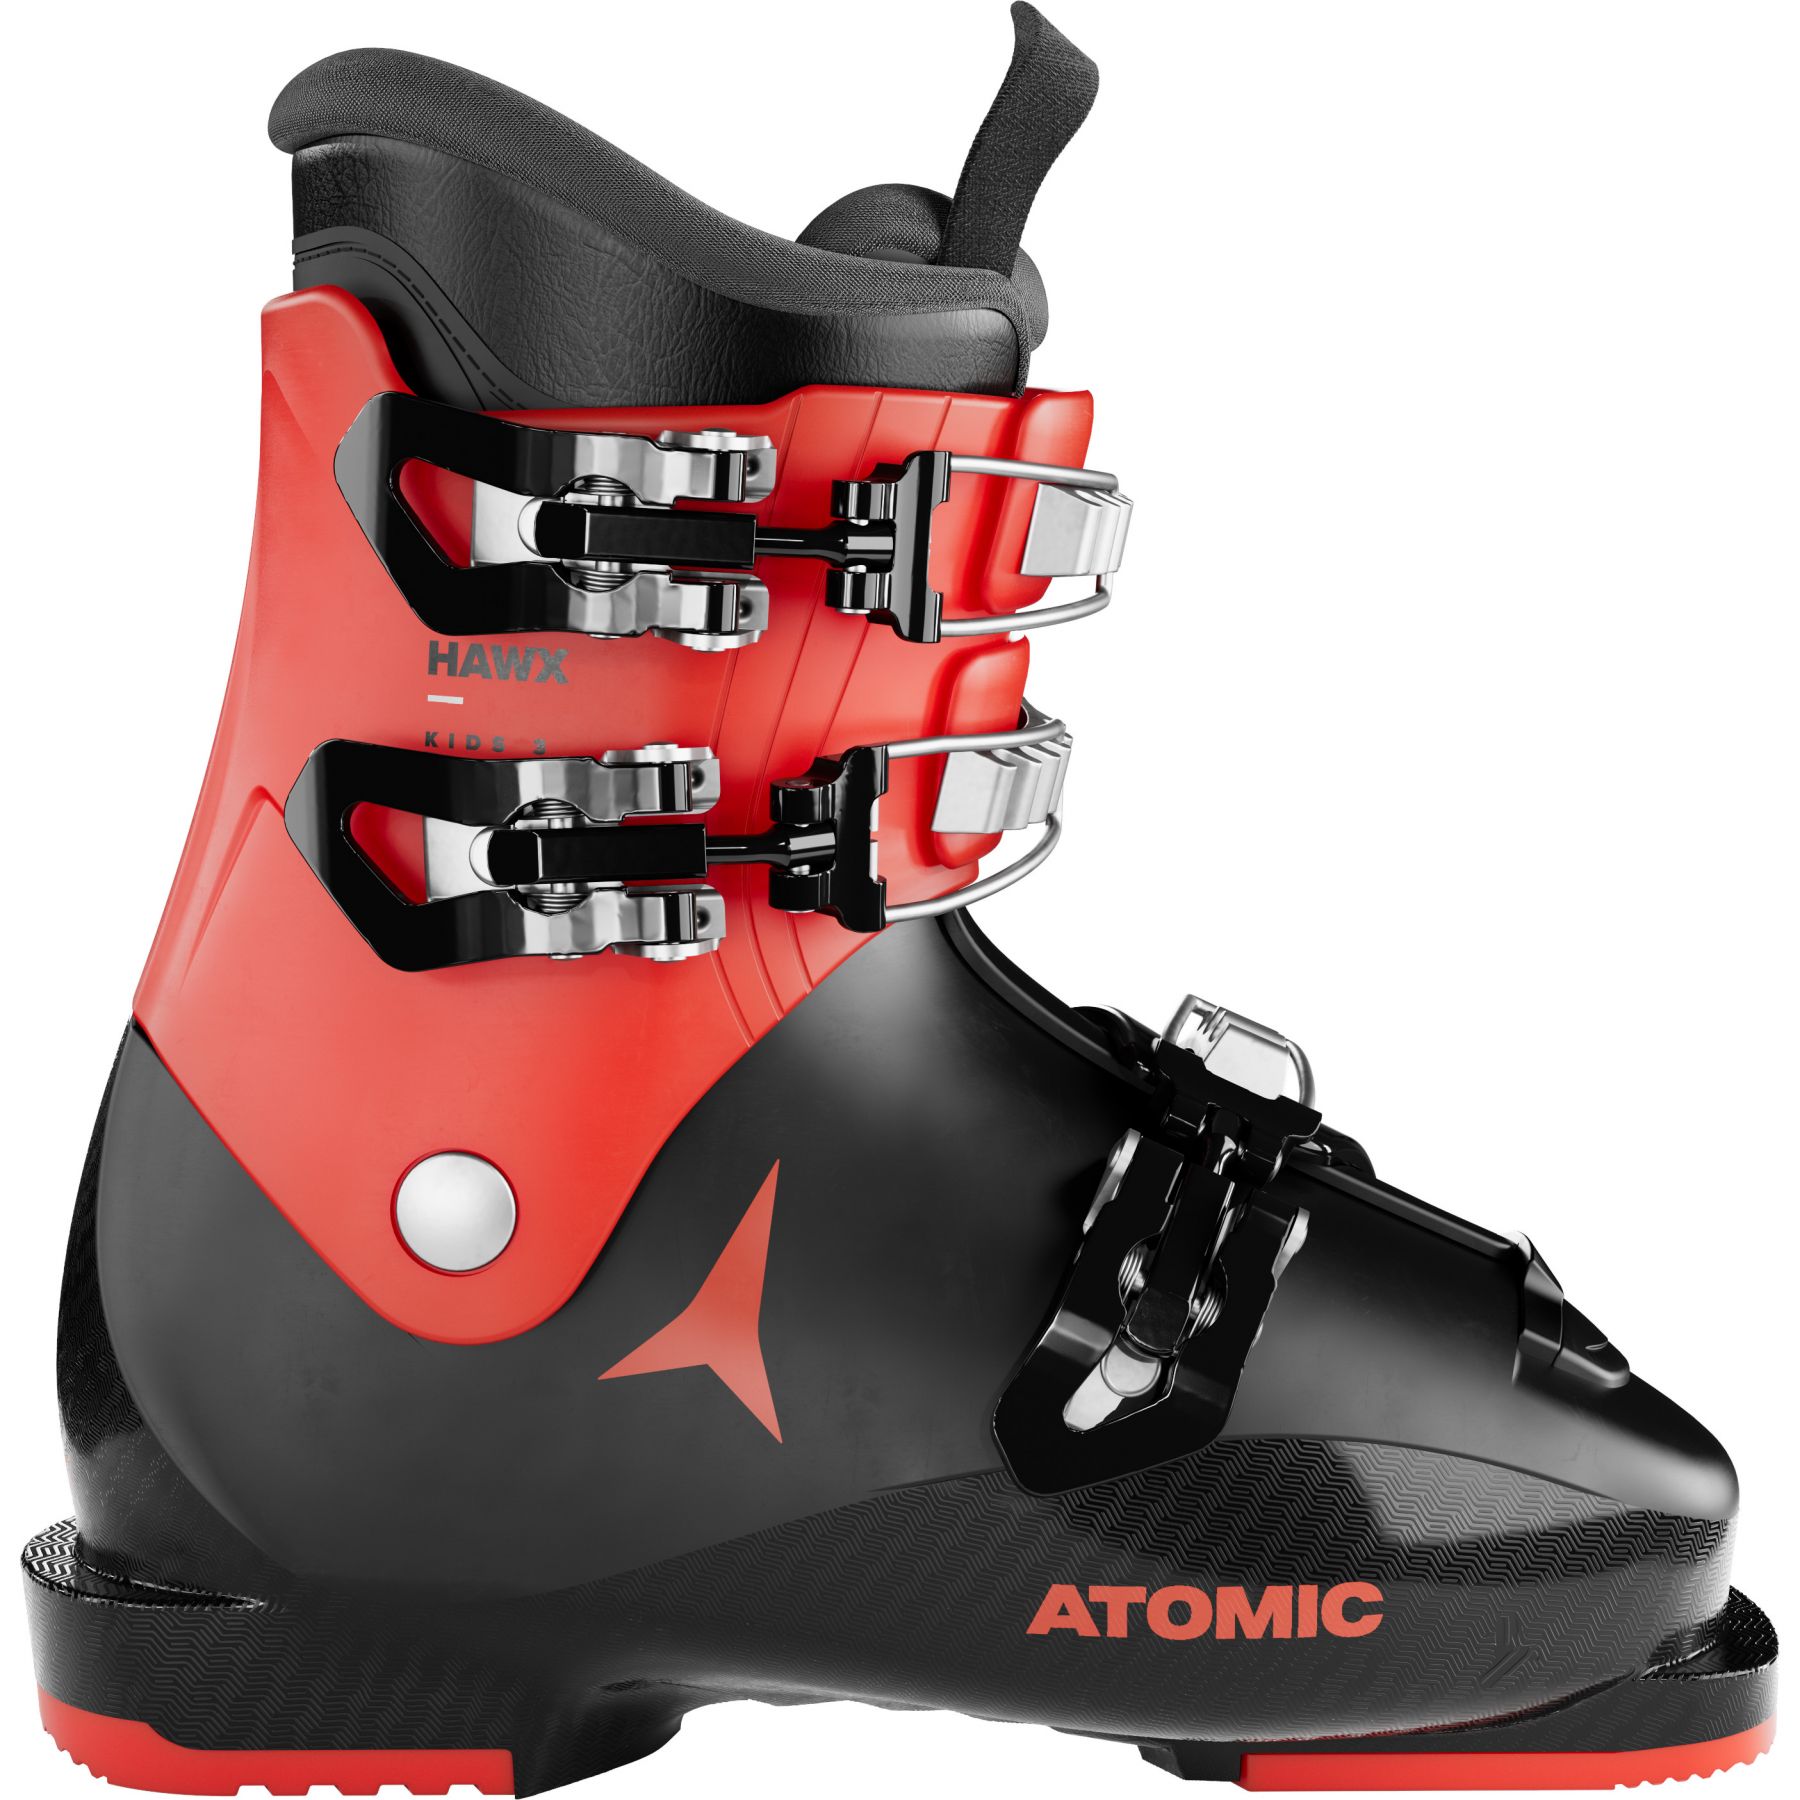 Billede af Atomic Hawx Kids 3, skistøvler, junior, sort/rød